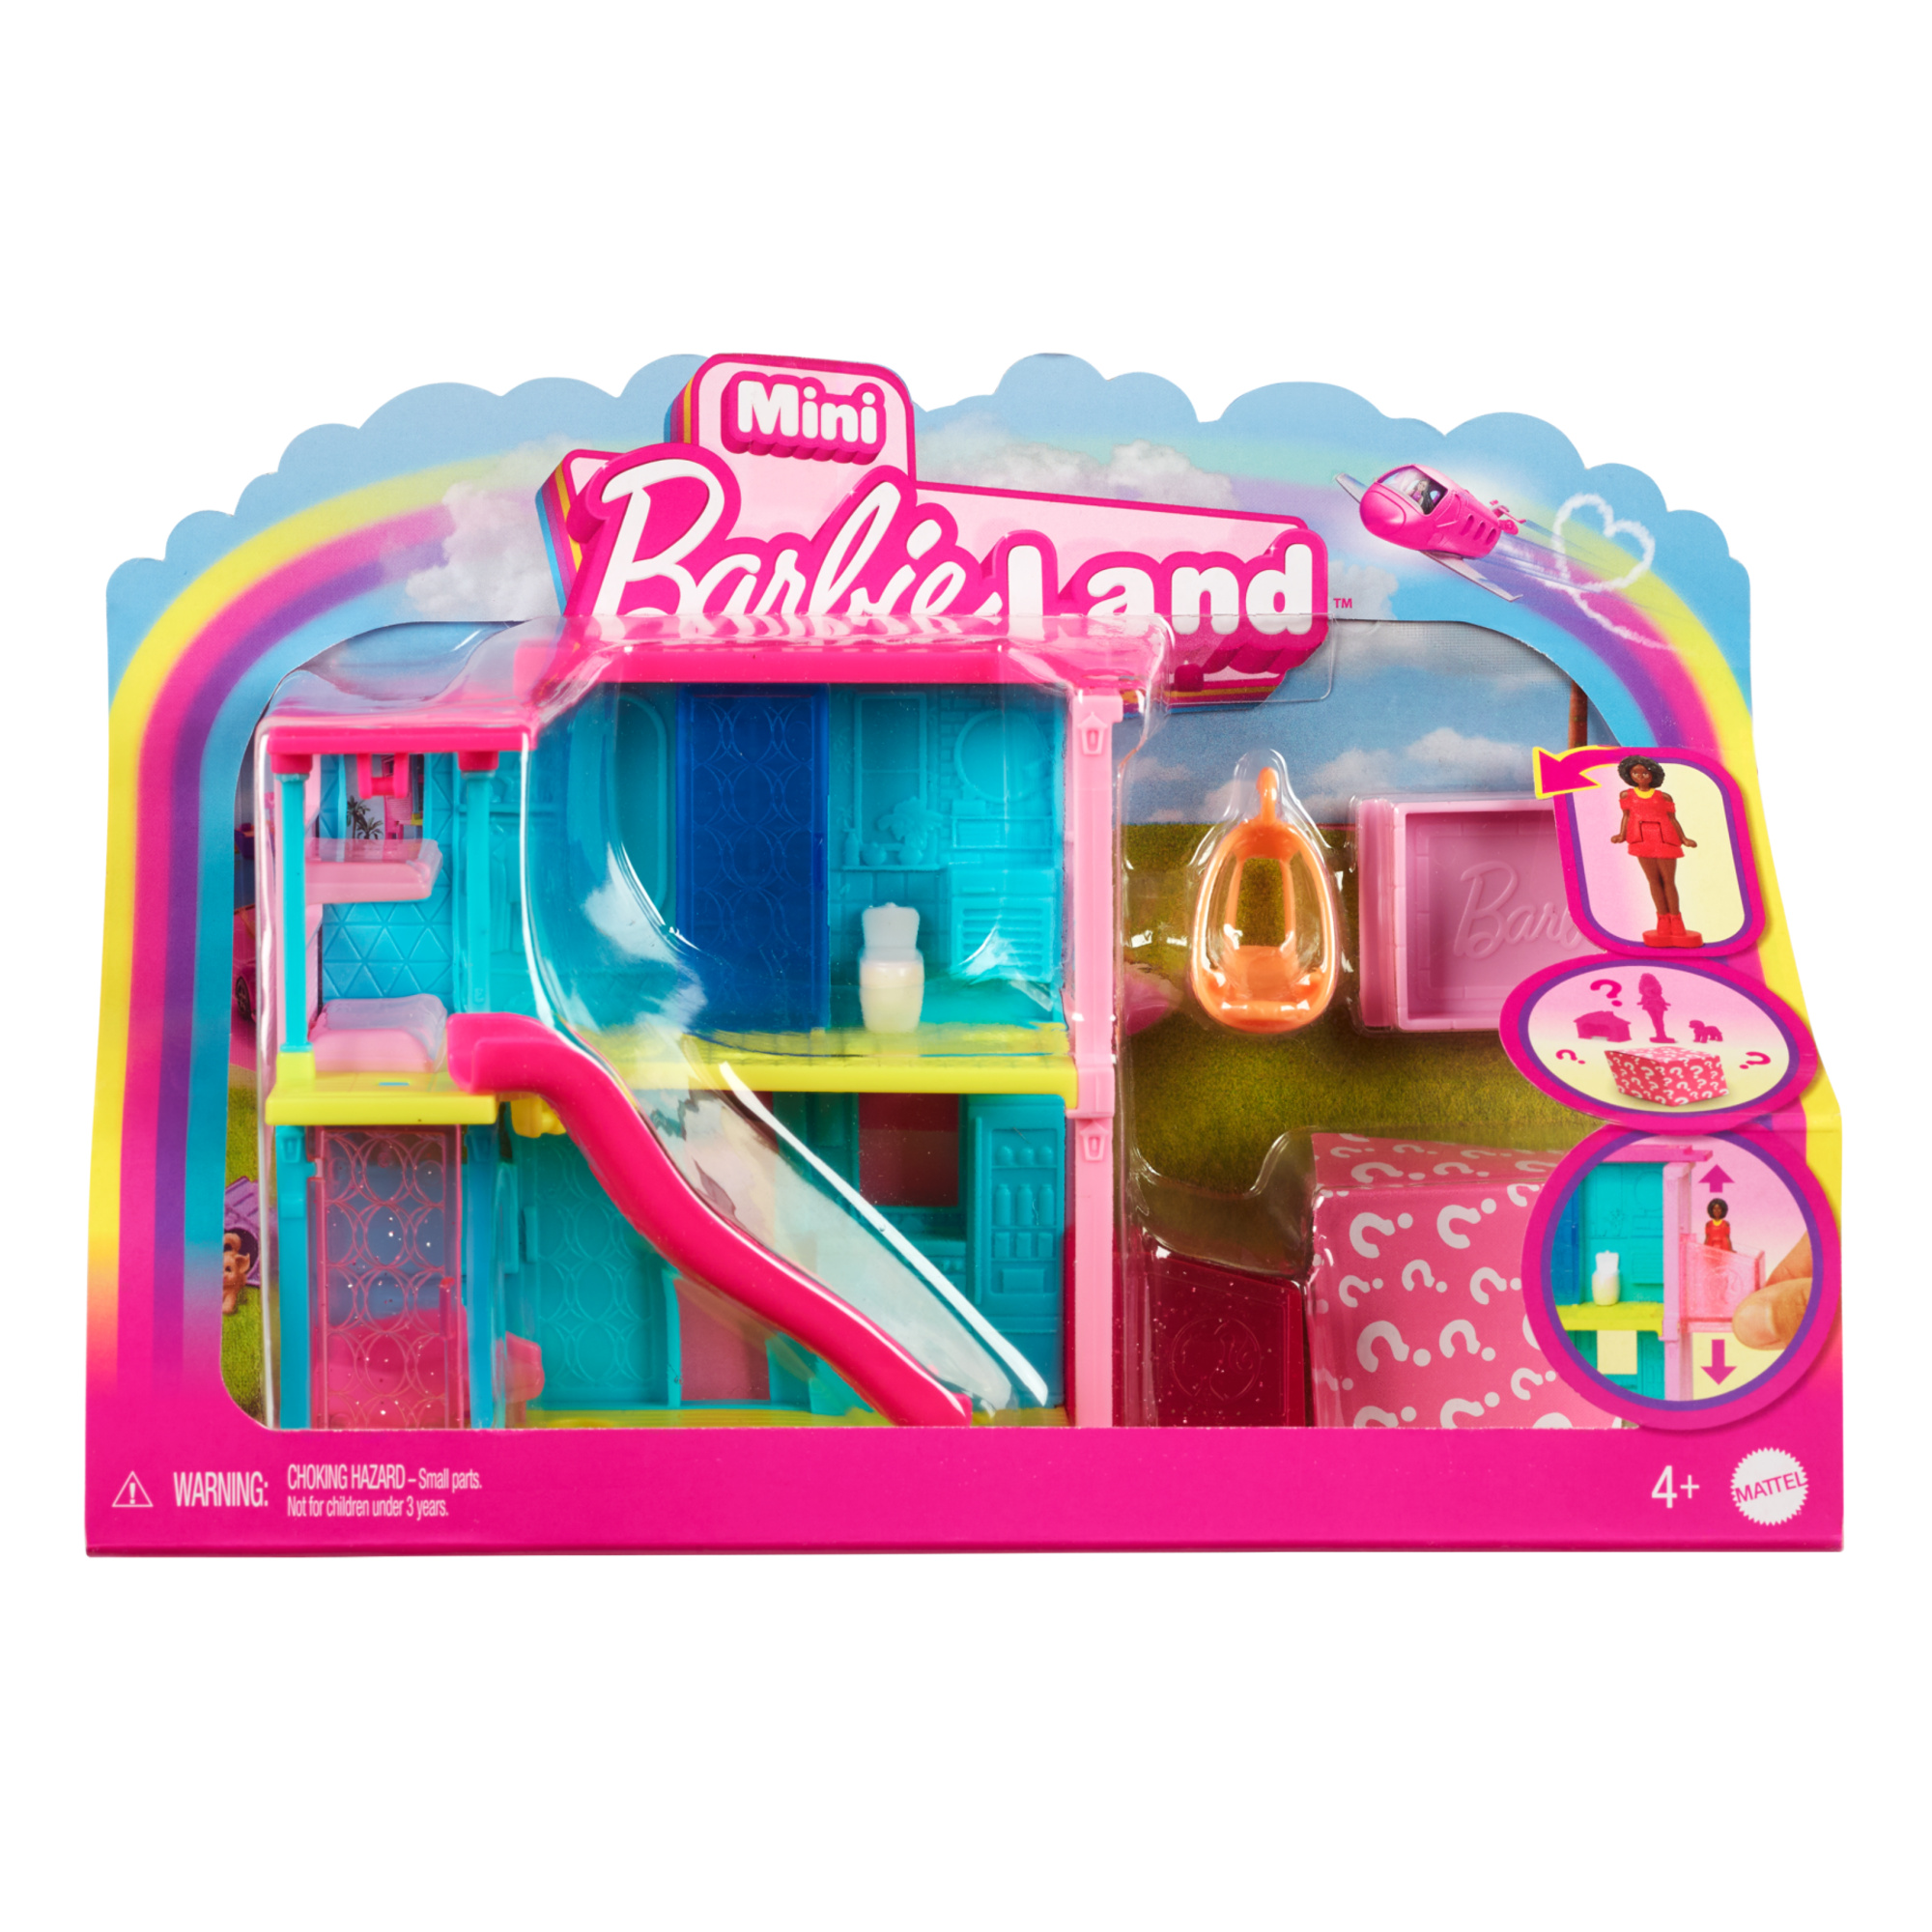 Mini barbieland - casa dei sogni 2 - playset con bambola barbie a sorpresa, mobili e accessori inclusi - Barbie